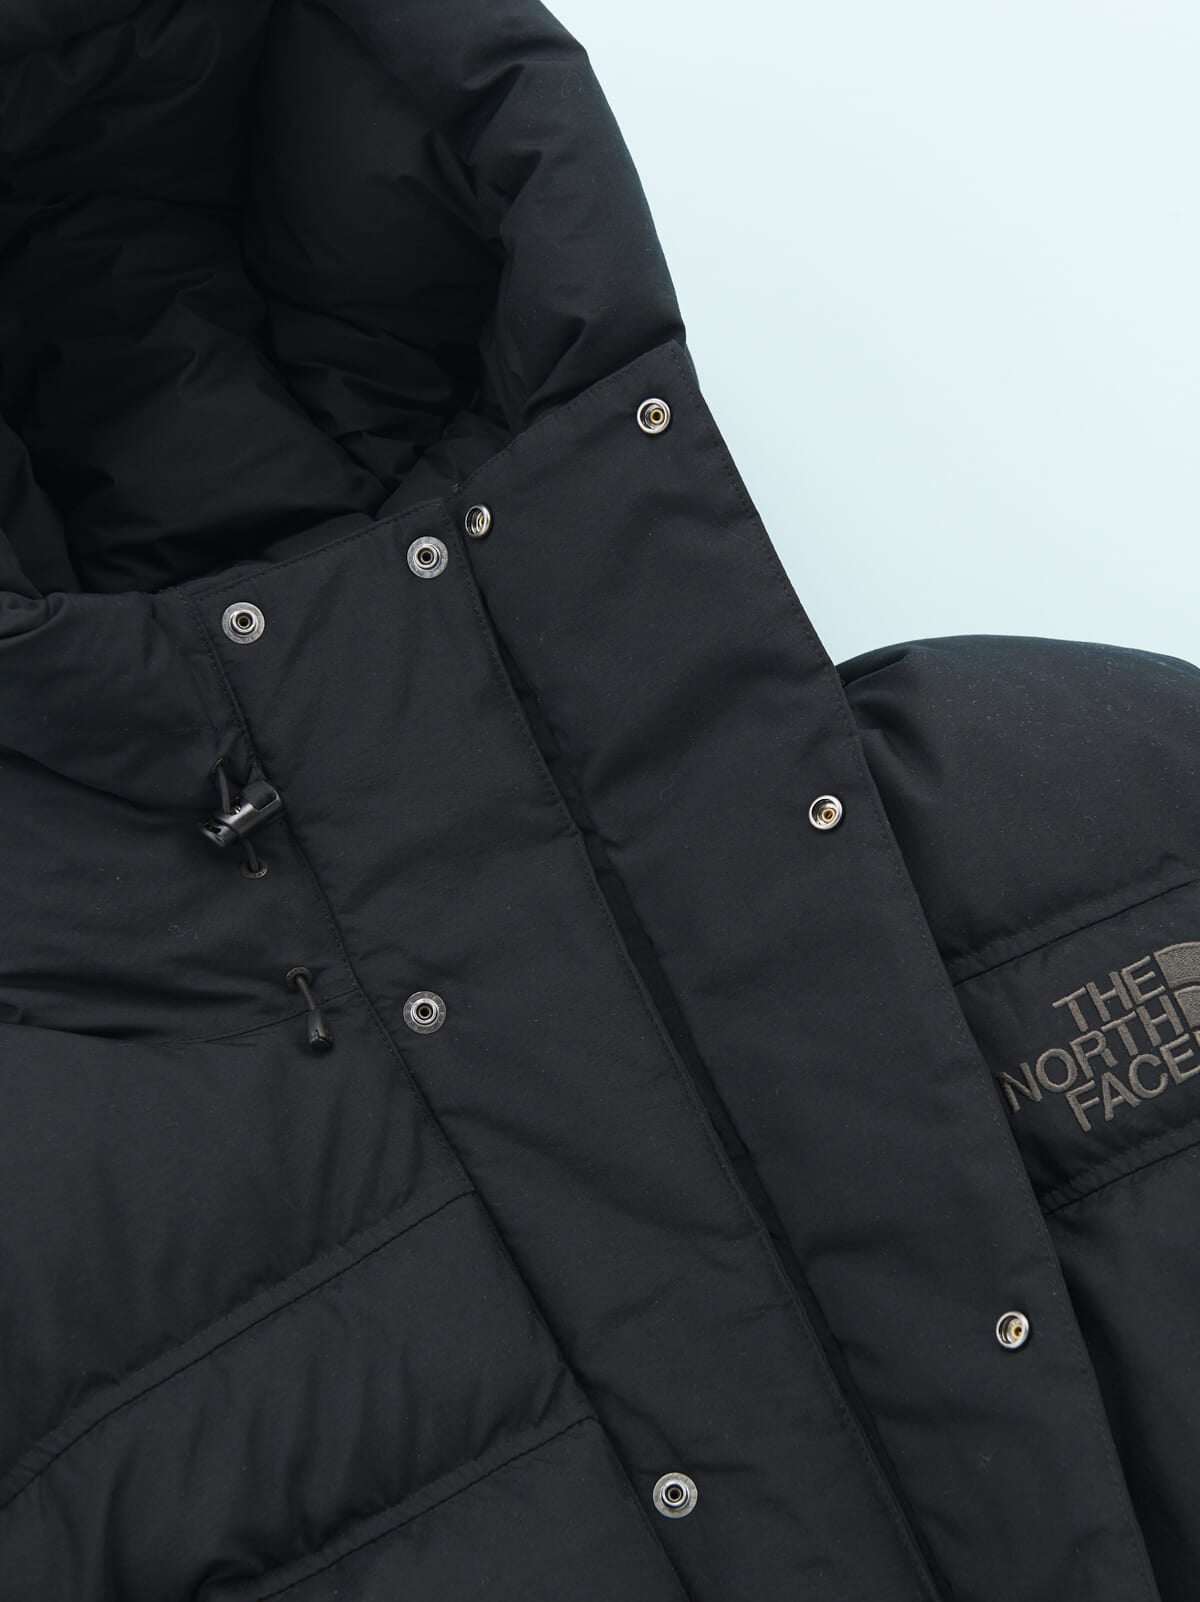 「ザ・ノース・フェイス」の23年冬の新作黒ダウンジャケット「オルタレーションバフズジャケット」の前立て